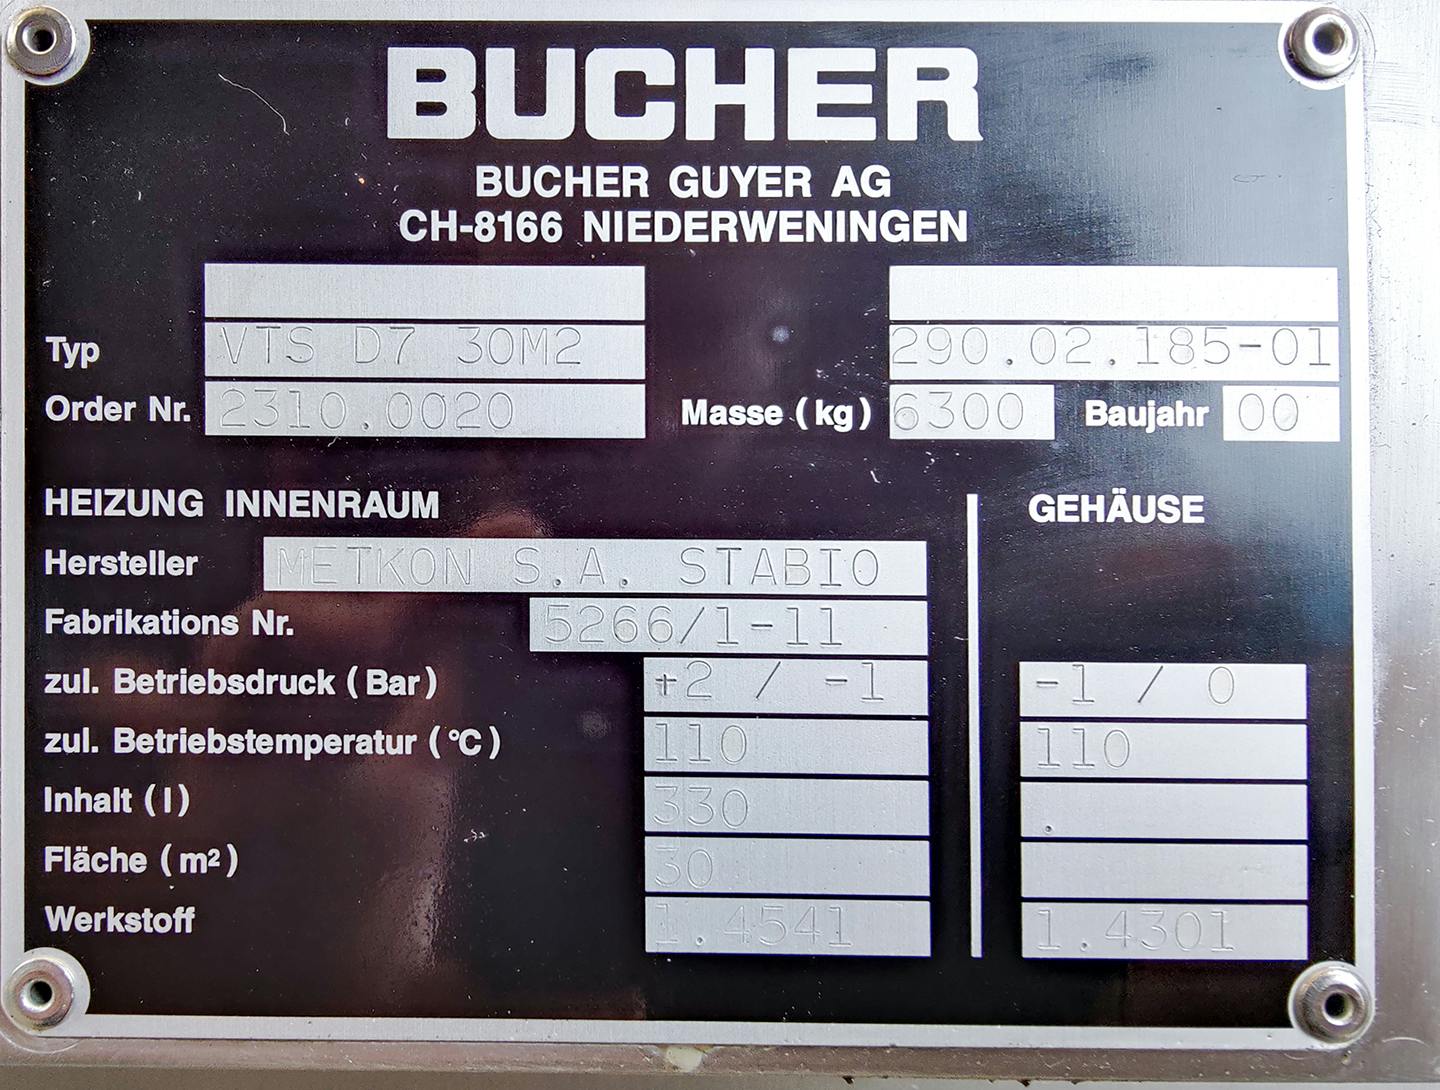 Bucher VTS-D7 30m2 - Полочная сушилка - image 8